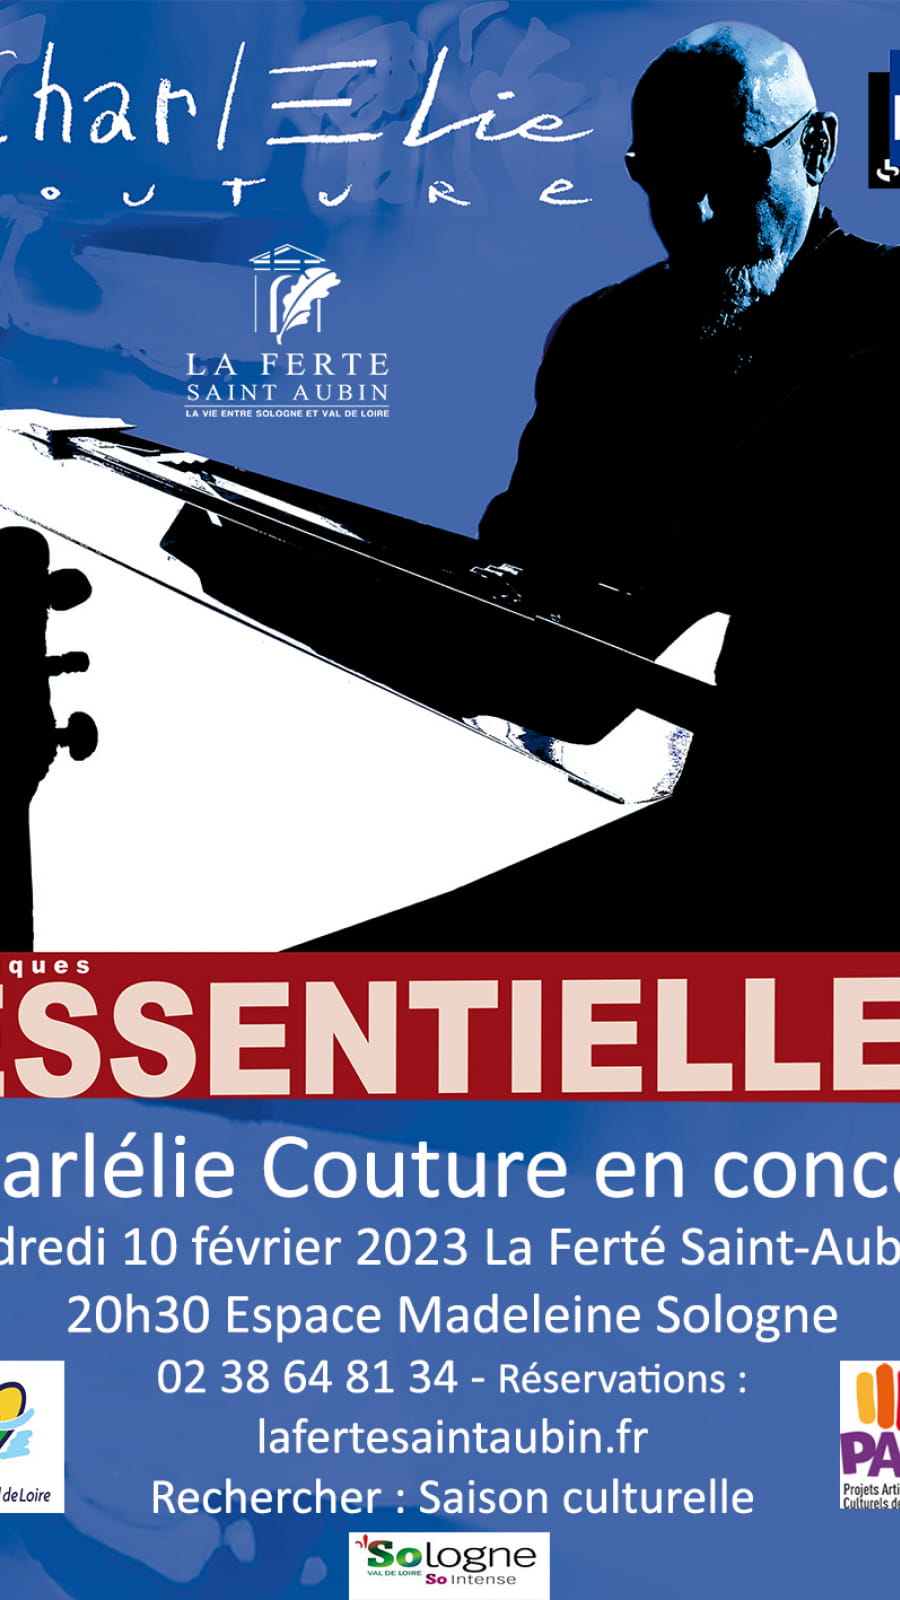  Concert de Charlélie Couture 'Quelques essentielles'